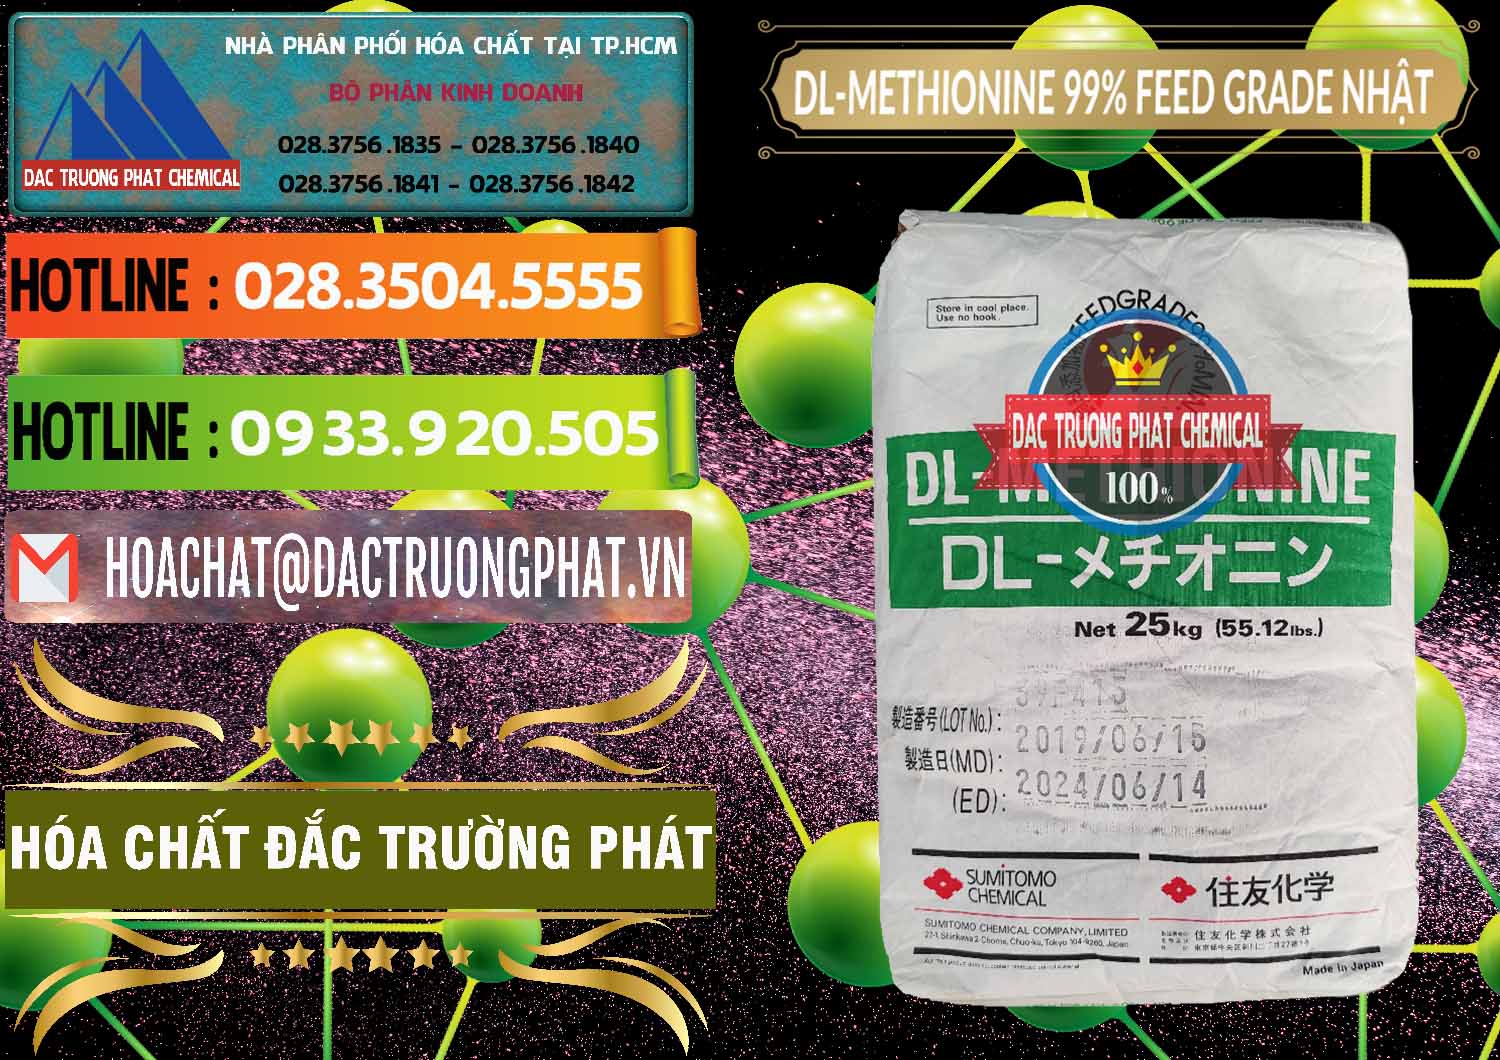 Bán _ cung ứng DL-Methionine - C5H11NO2S Feed Grade Sumitomo Nhật Bản Japan - 0313 - Cty nhập khẩu ( phân phối ) hóa chất tại TP.HCM - cungcaphoachat.com.vn